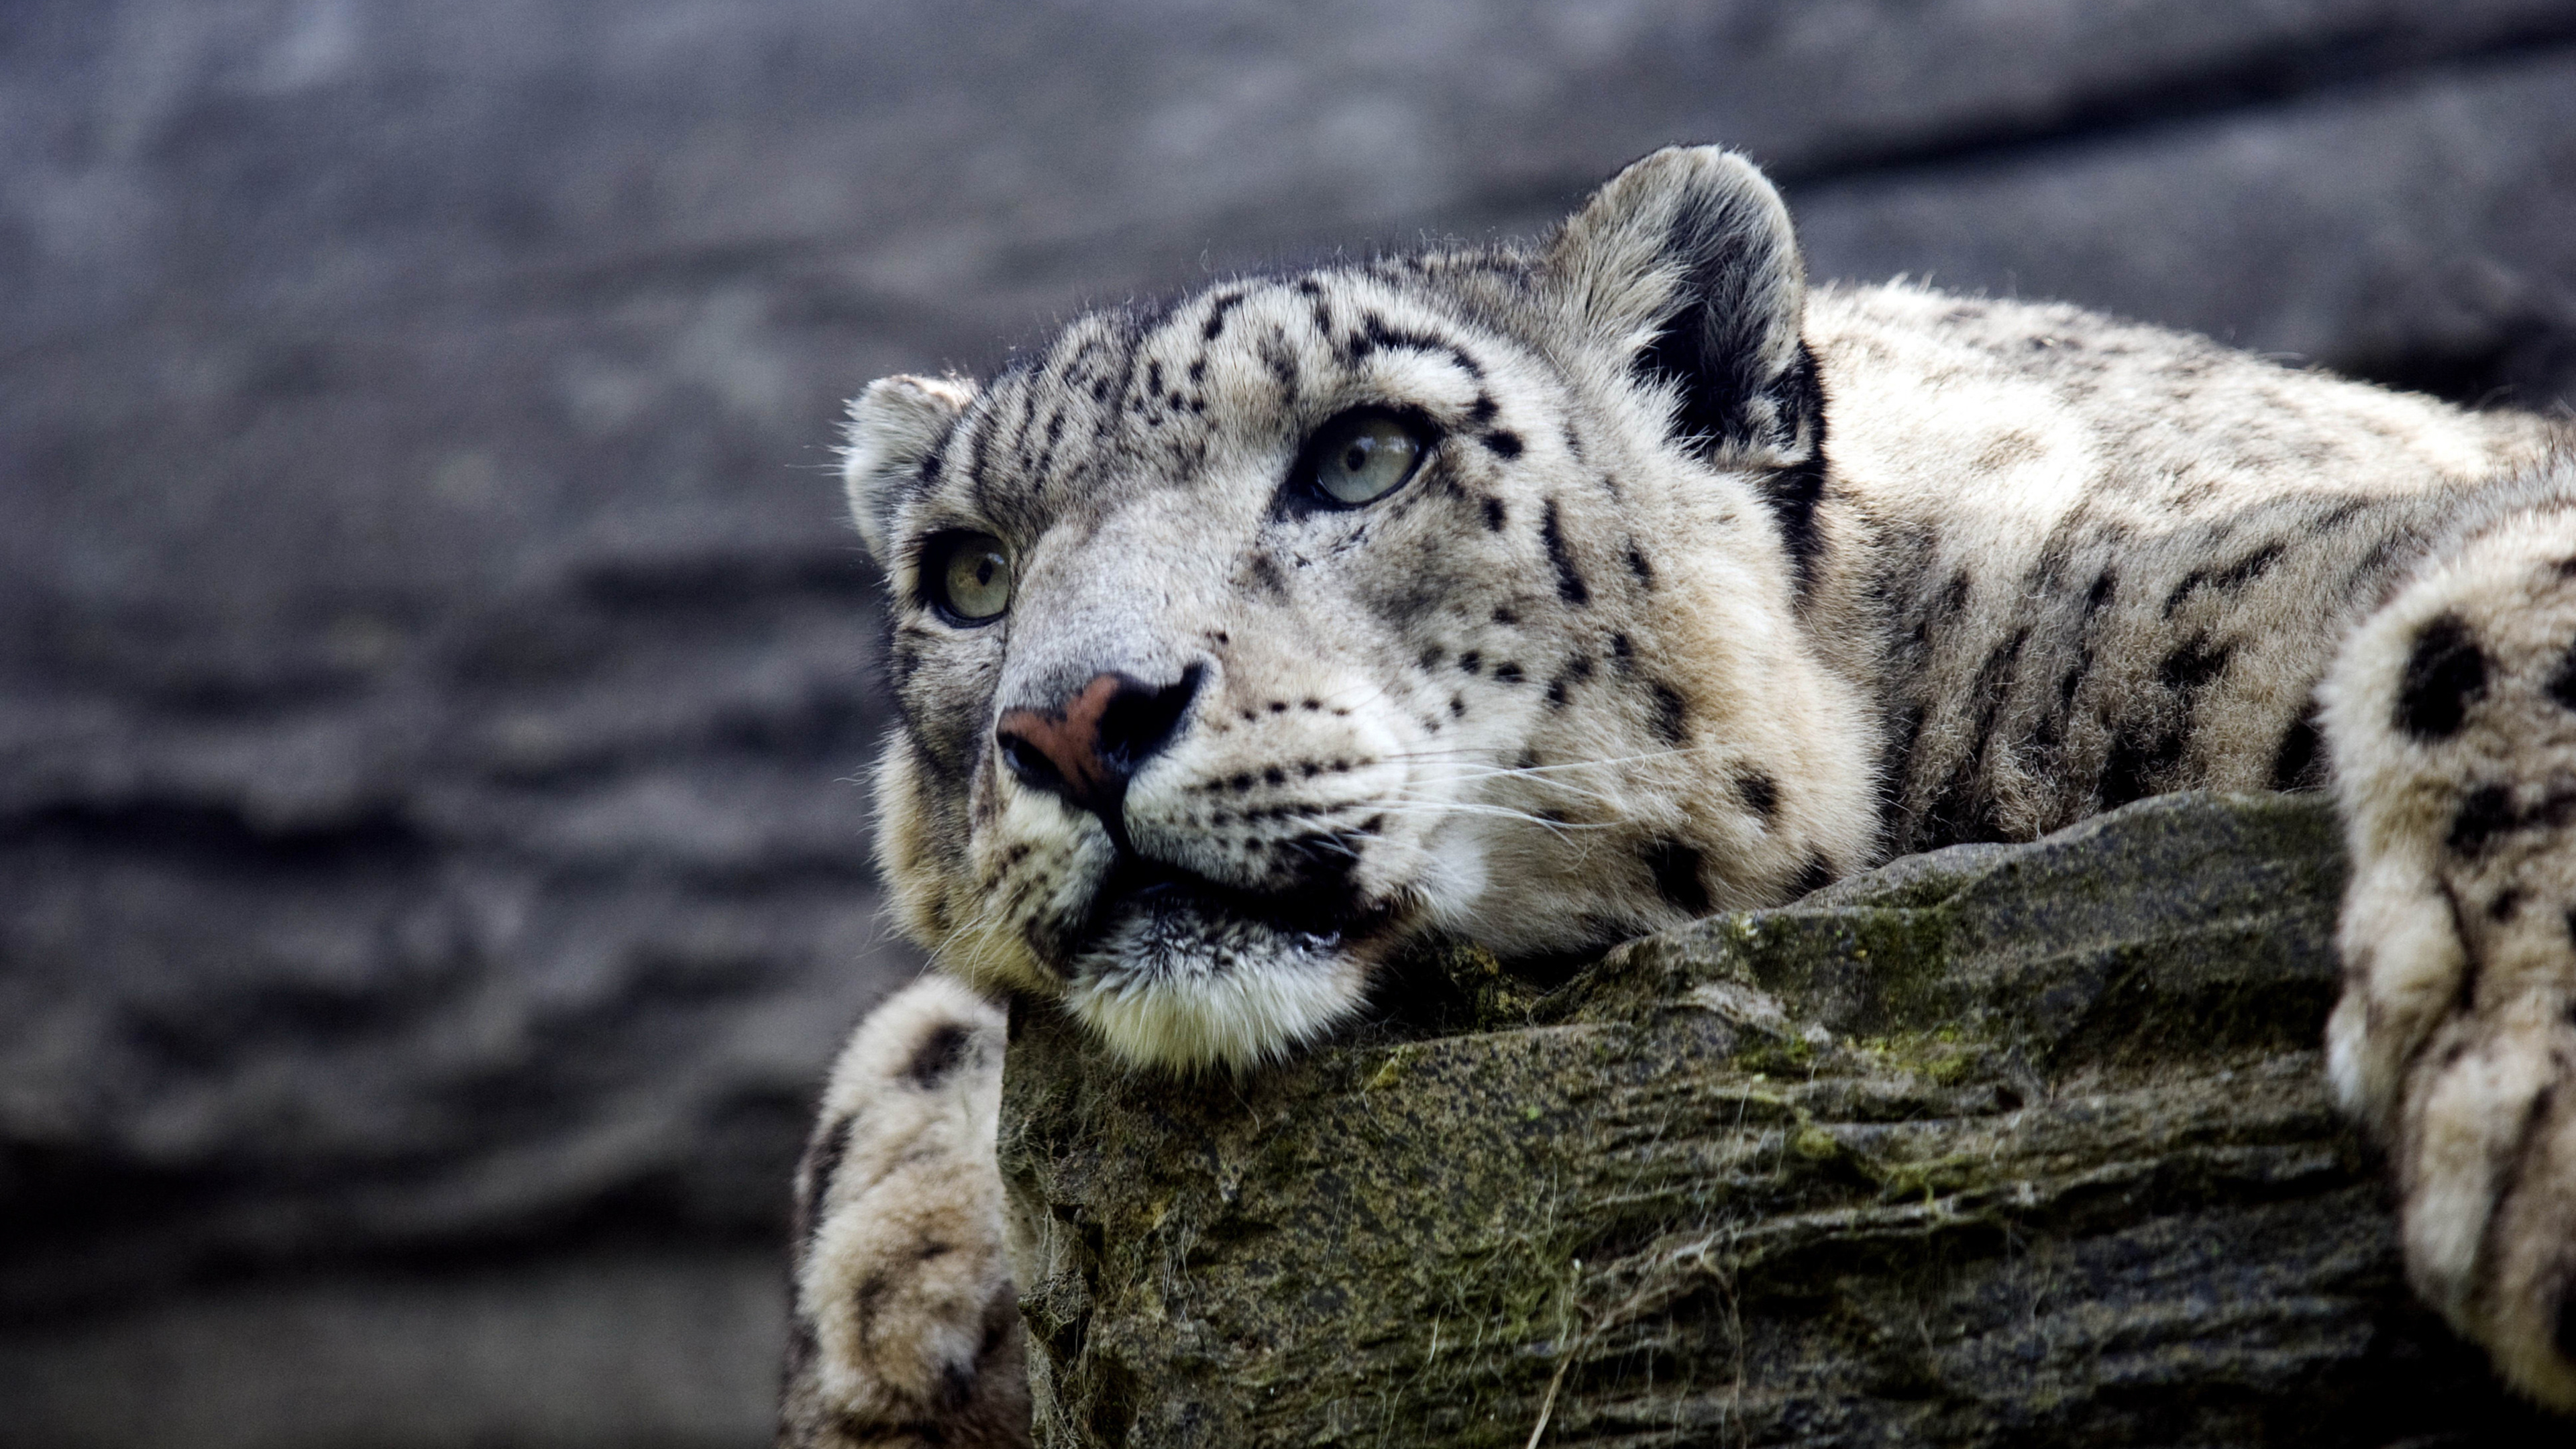 Snow leopard hd 4k, Wallpapers images, Photos pictures, 3840x2160 4K Desktop